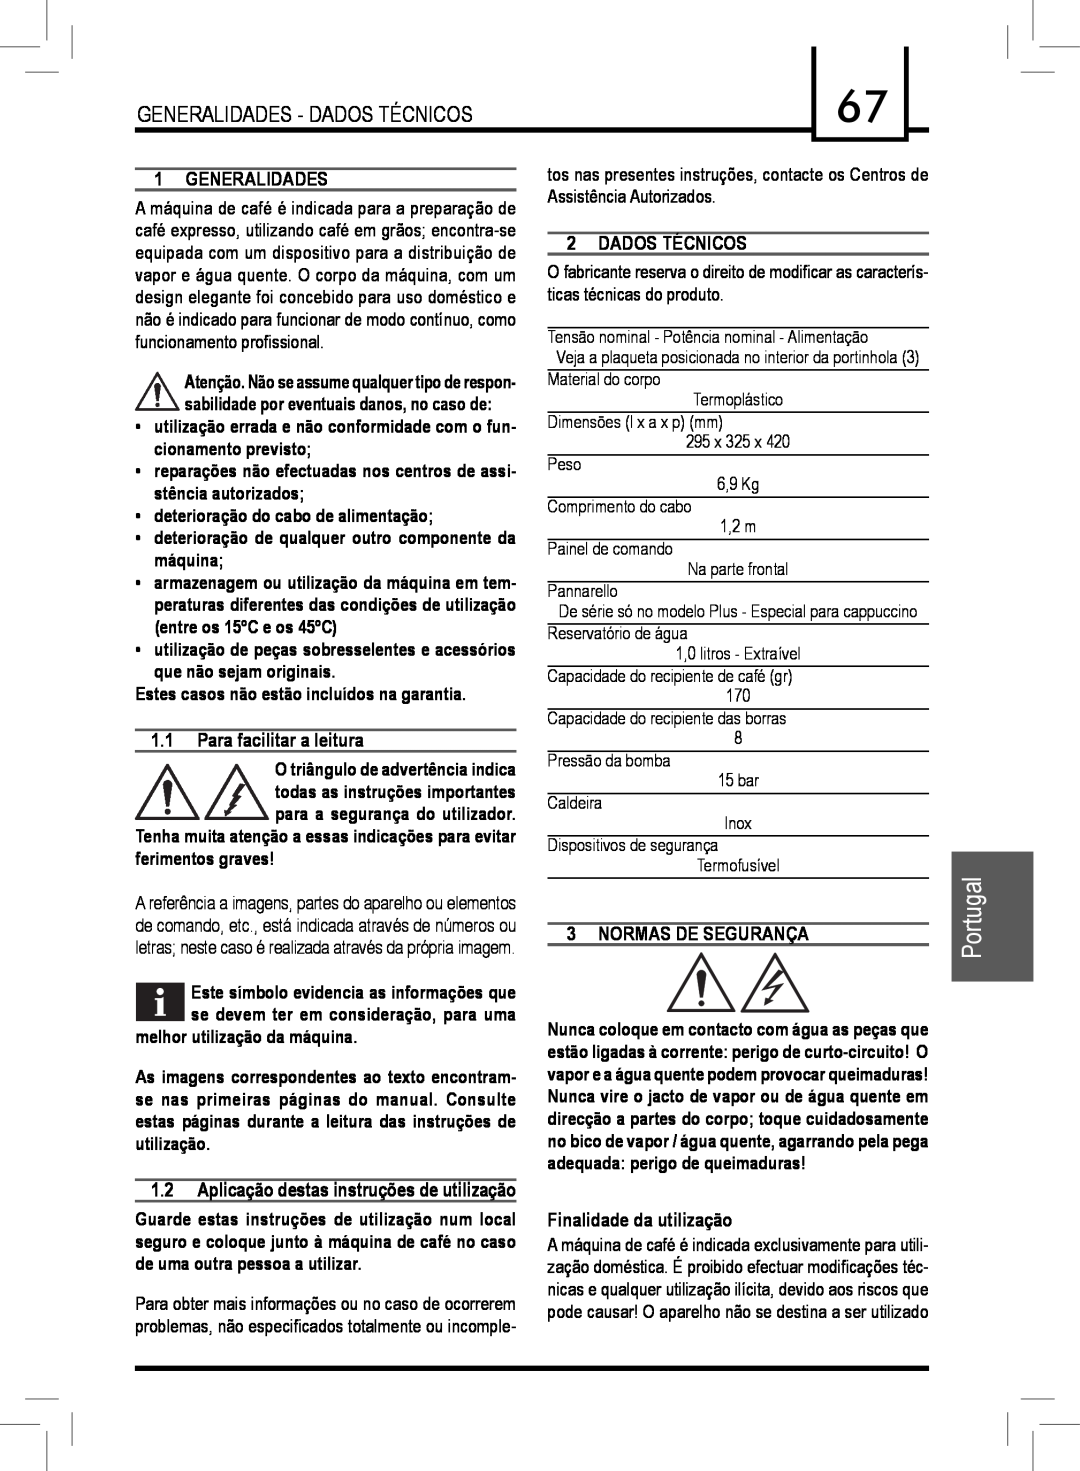 Saeco Coffee Makers PLUS manual Portugal, Generalidades, Para facilitar a leitura, Dados Técnicos, Normas De Segurança 